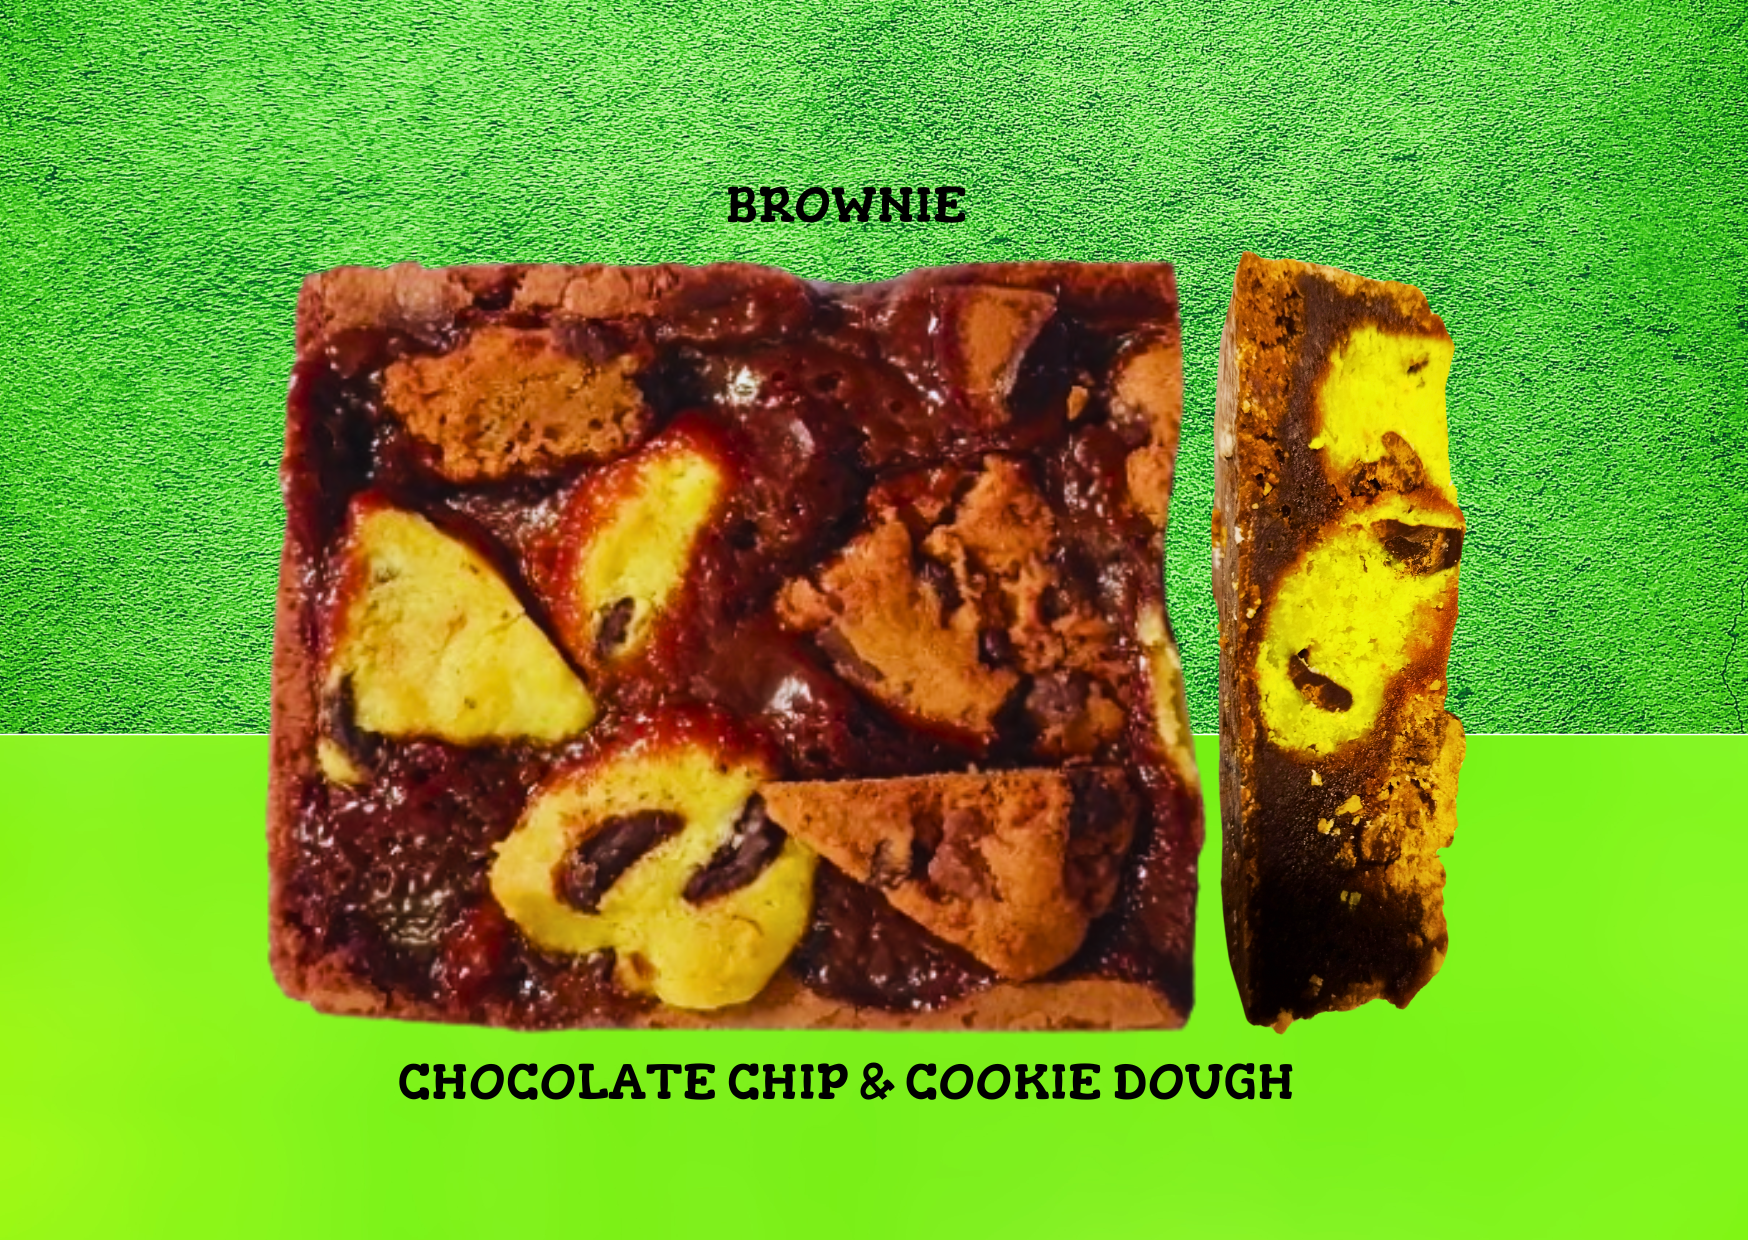 Brownie met cookie dough en chocolate chip